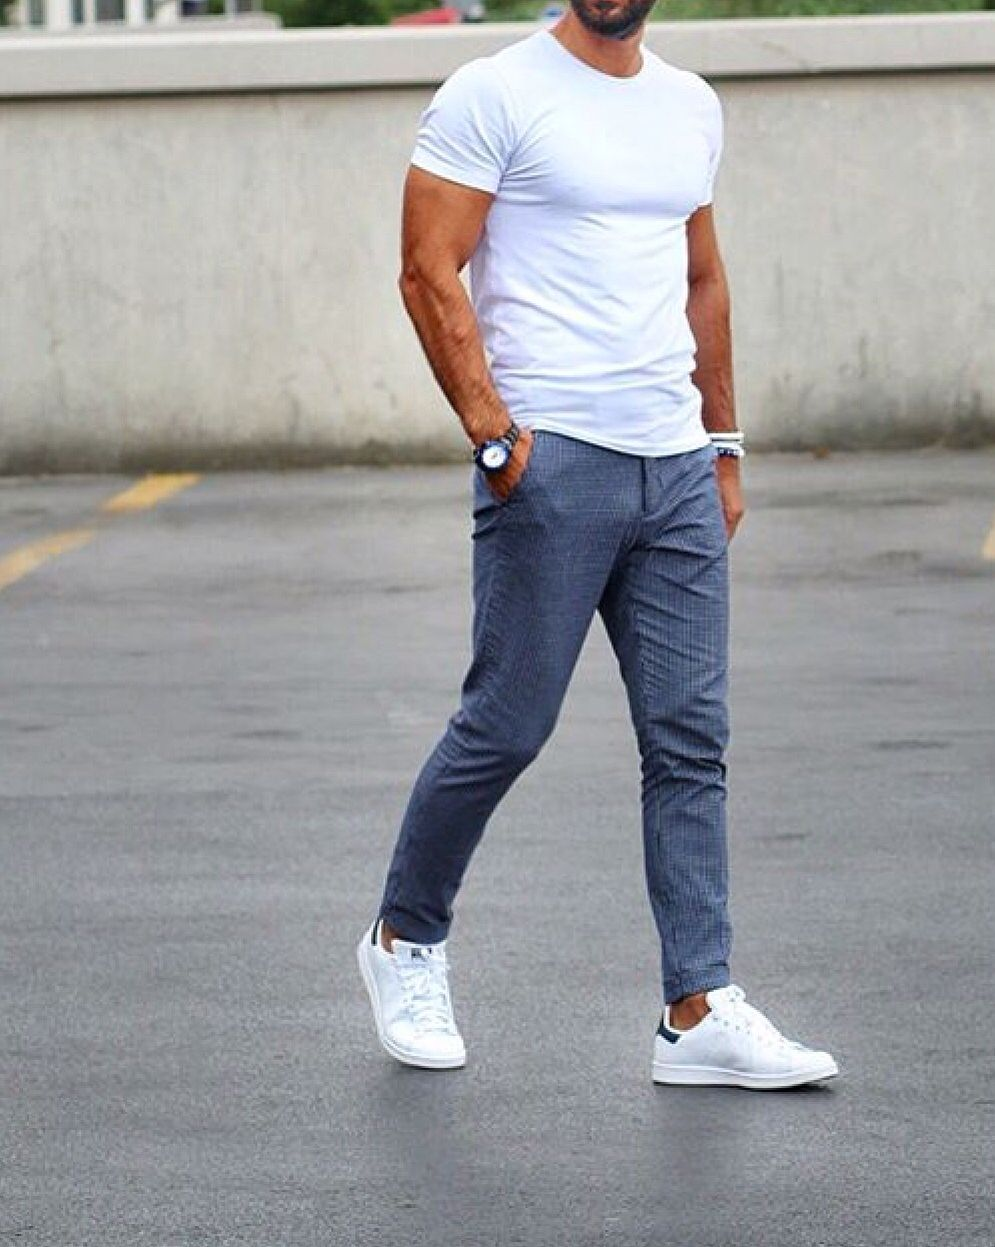 Синие спортивные штаны мужские с чем носить